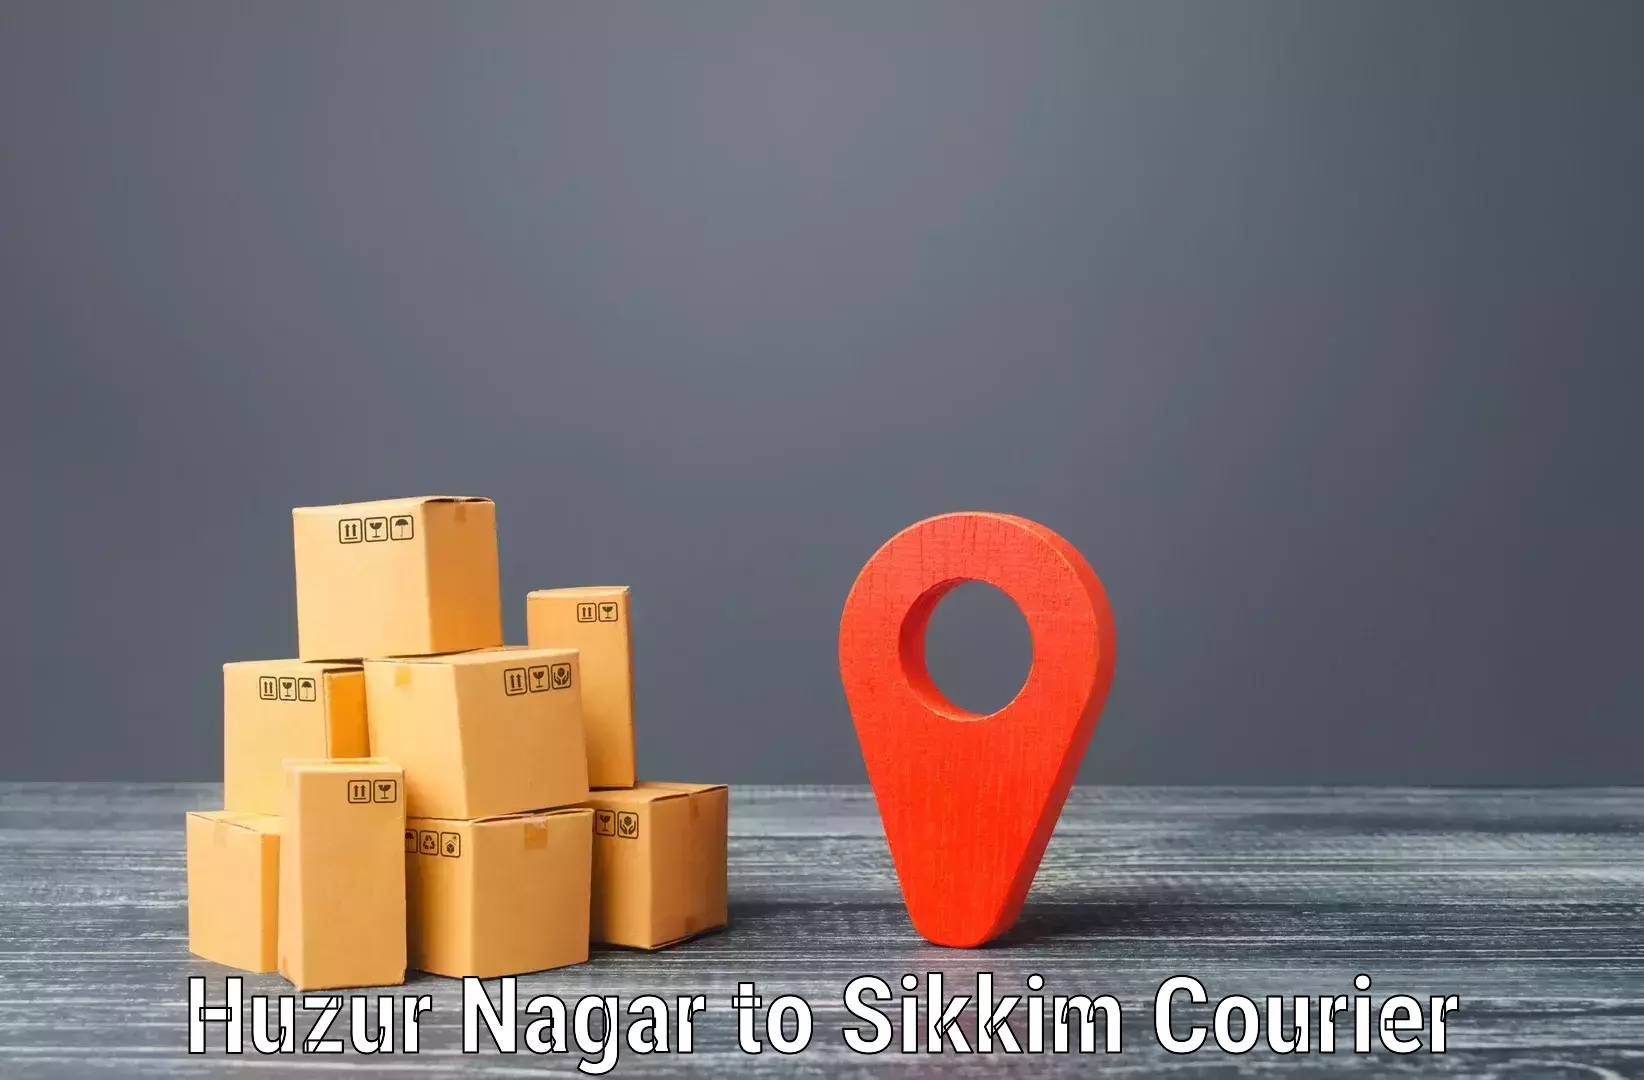 Trackable shipping service Huzur Nagar to Rangpo